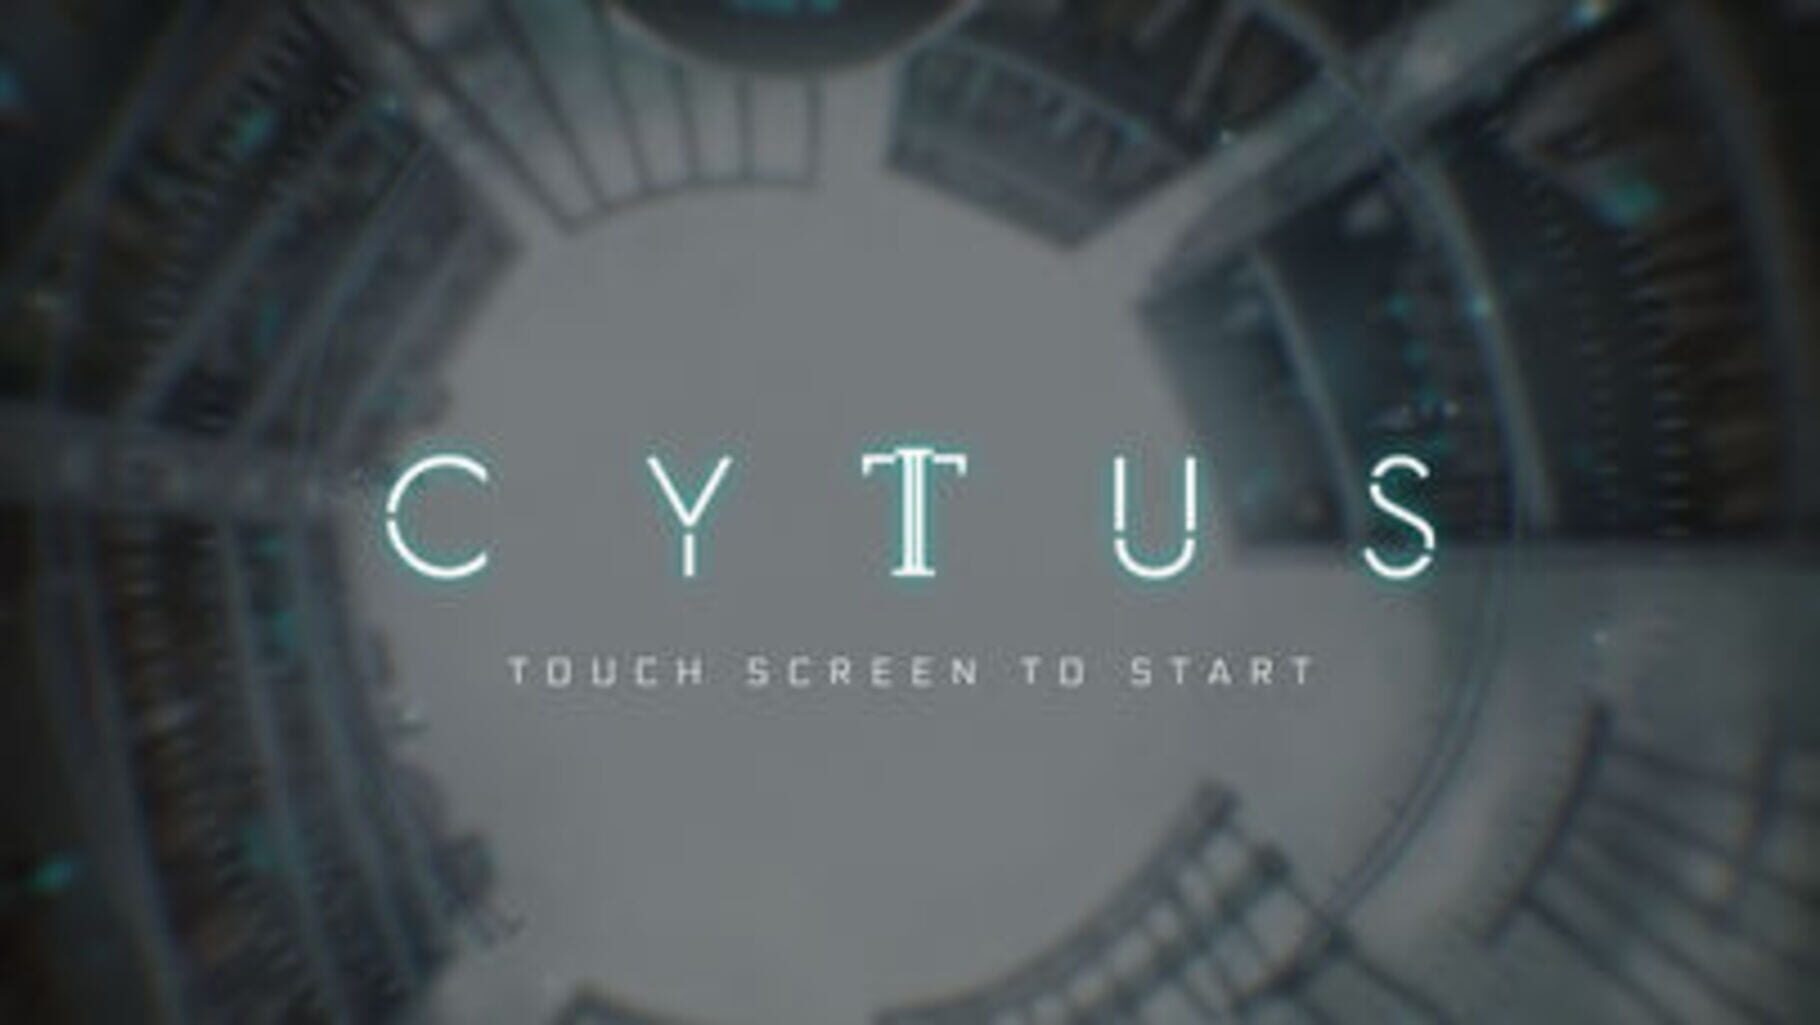 Cytus II